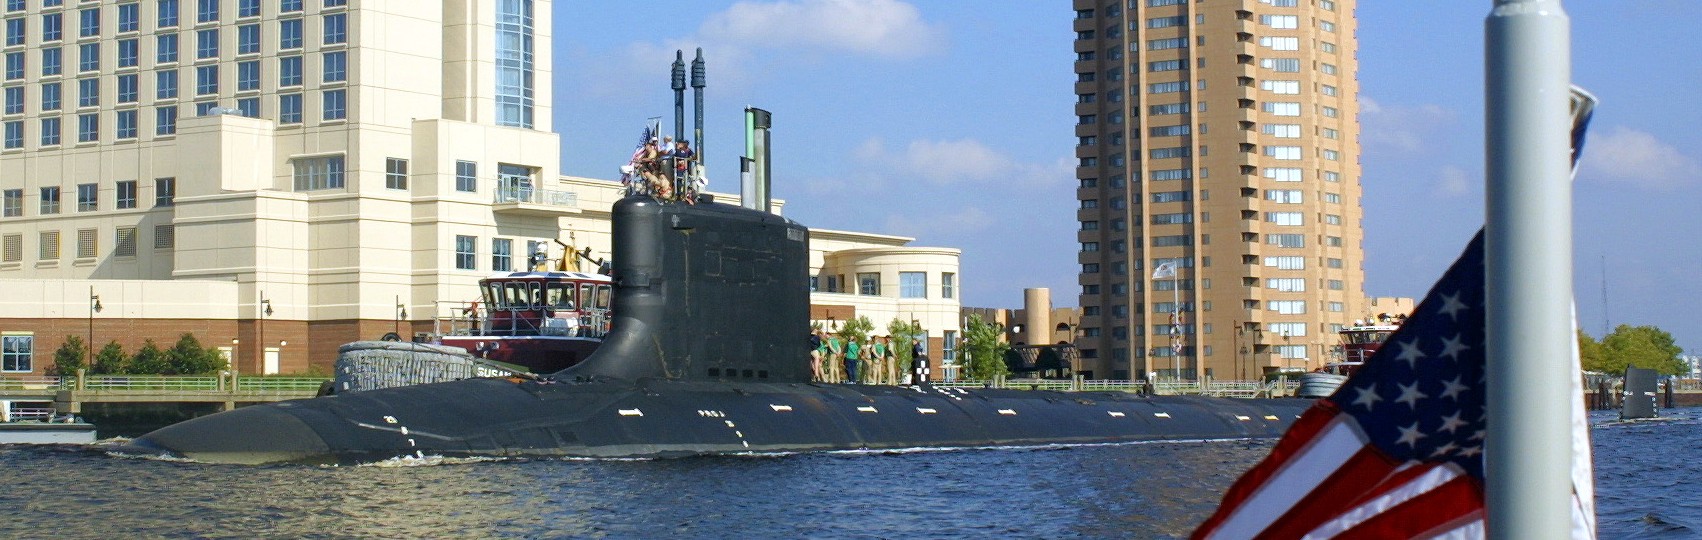 ssn-774 uss virginia attack submarine navy 2004 40